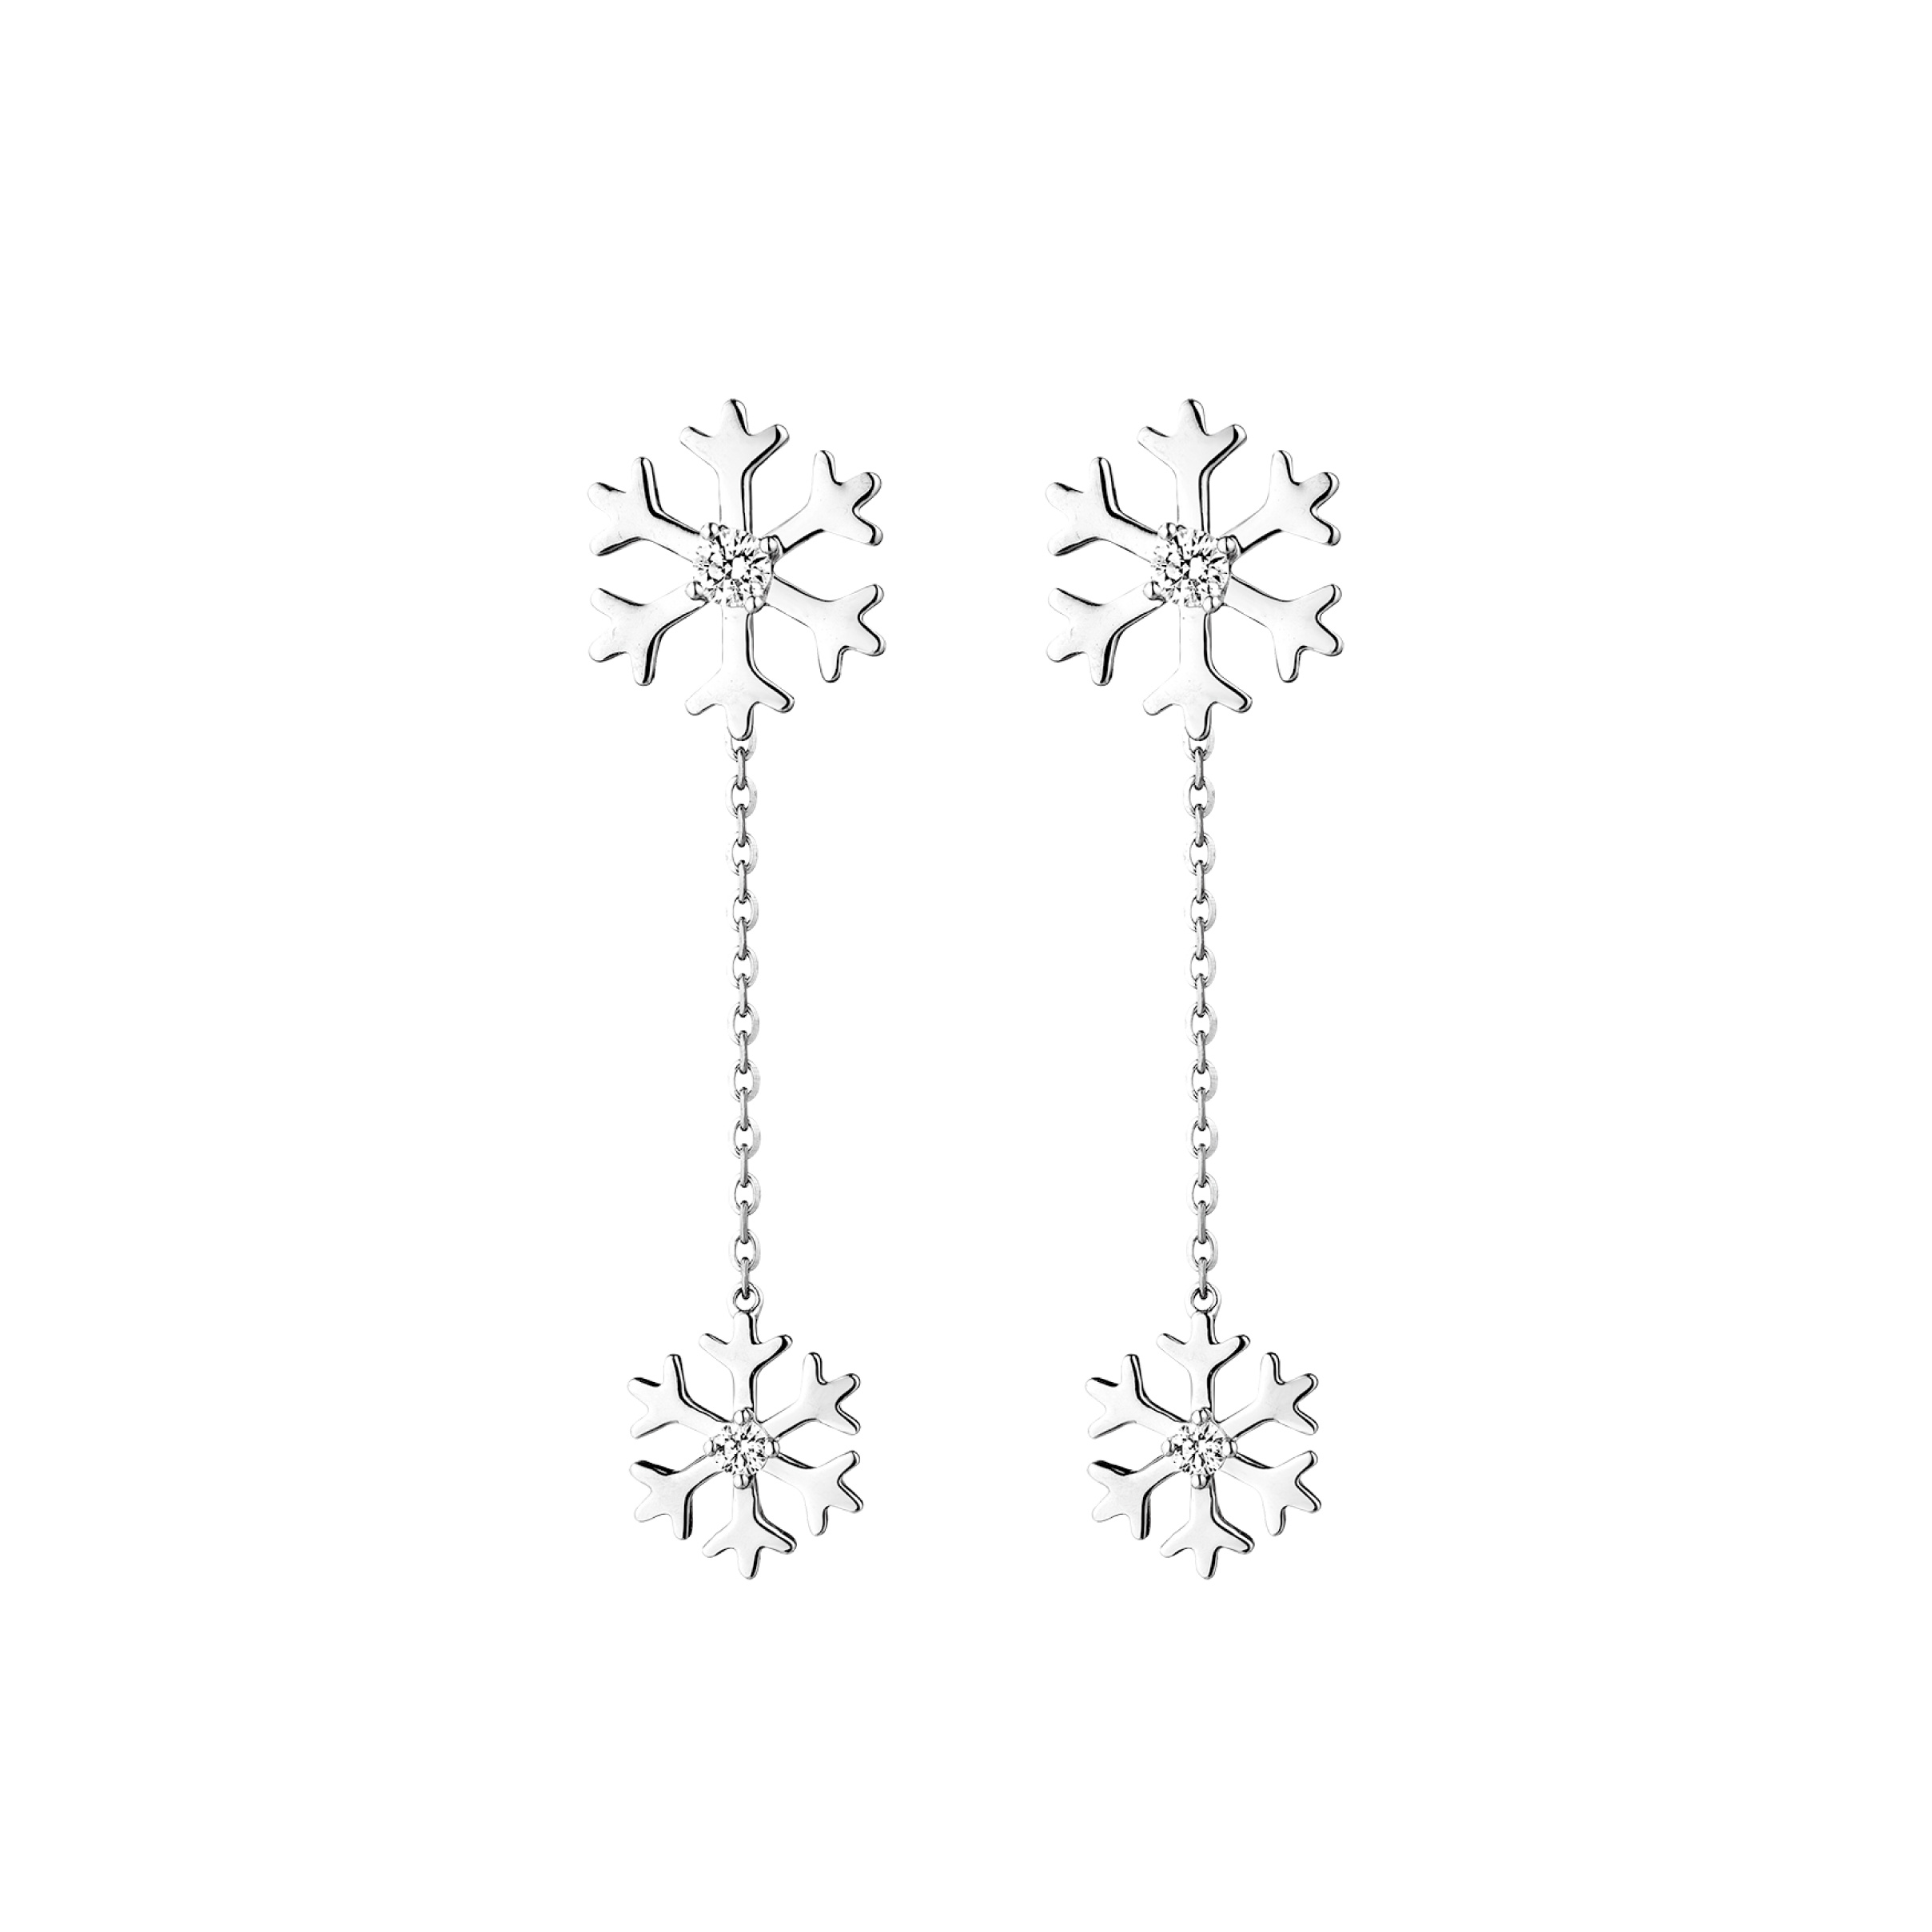 Dear Q“Love of Snowy” 18K White Gold Diamond Earrings